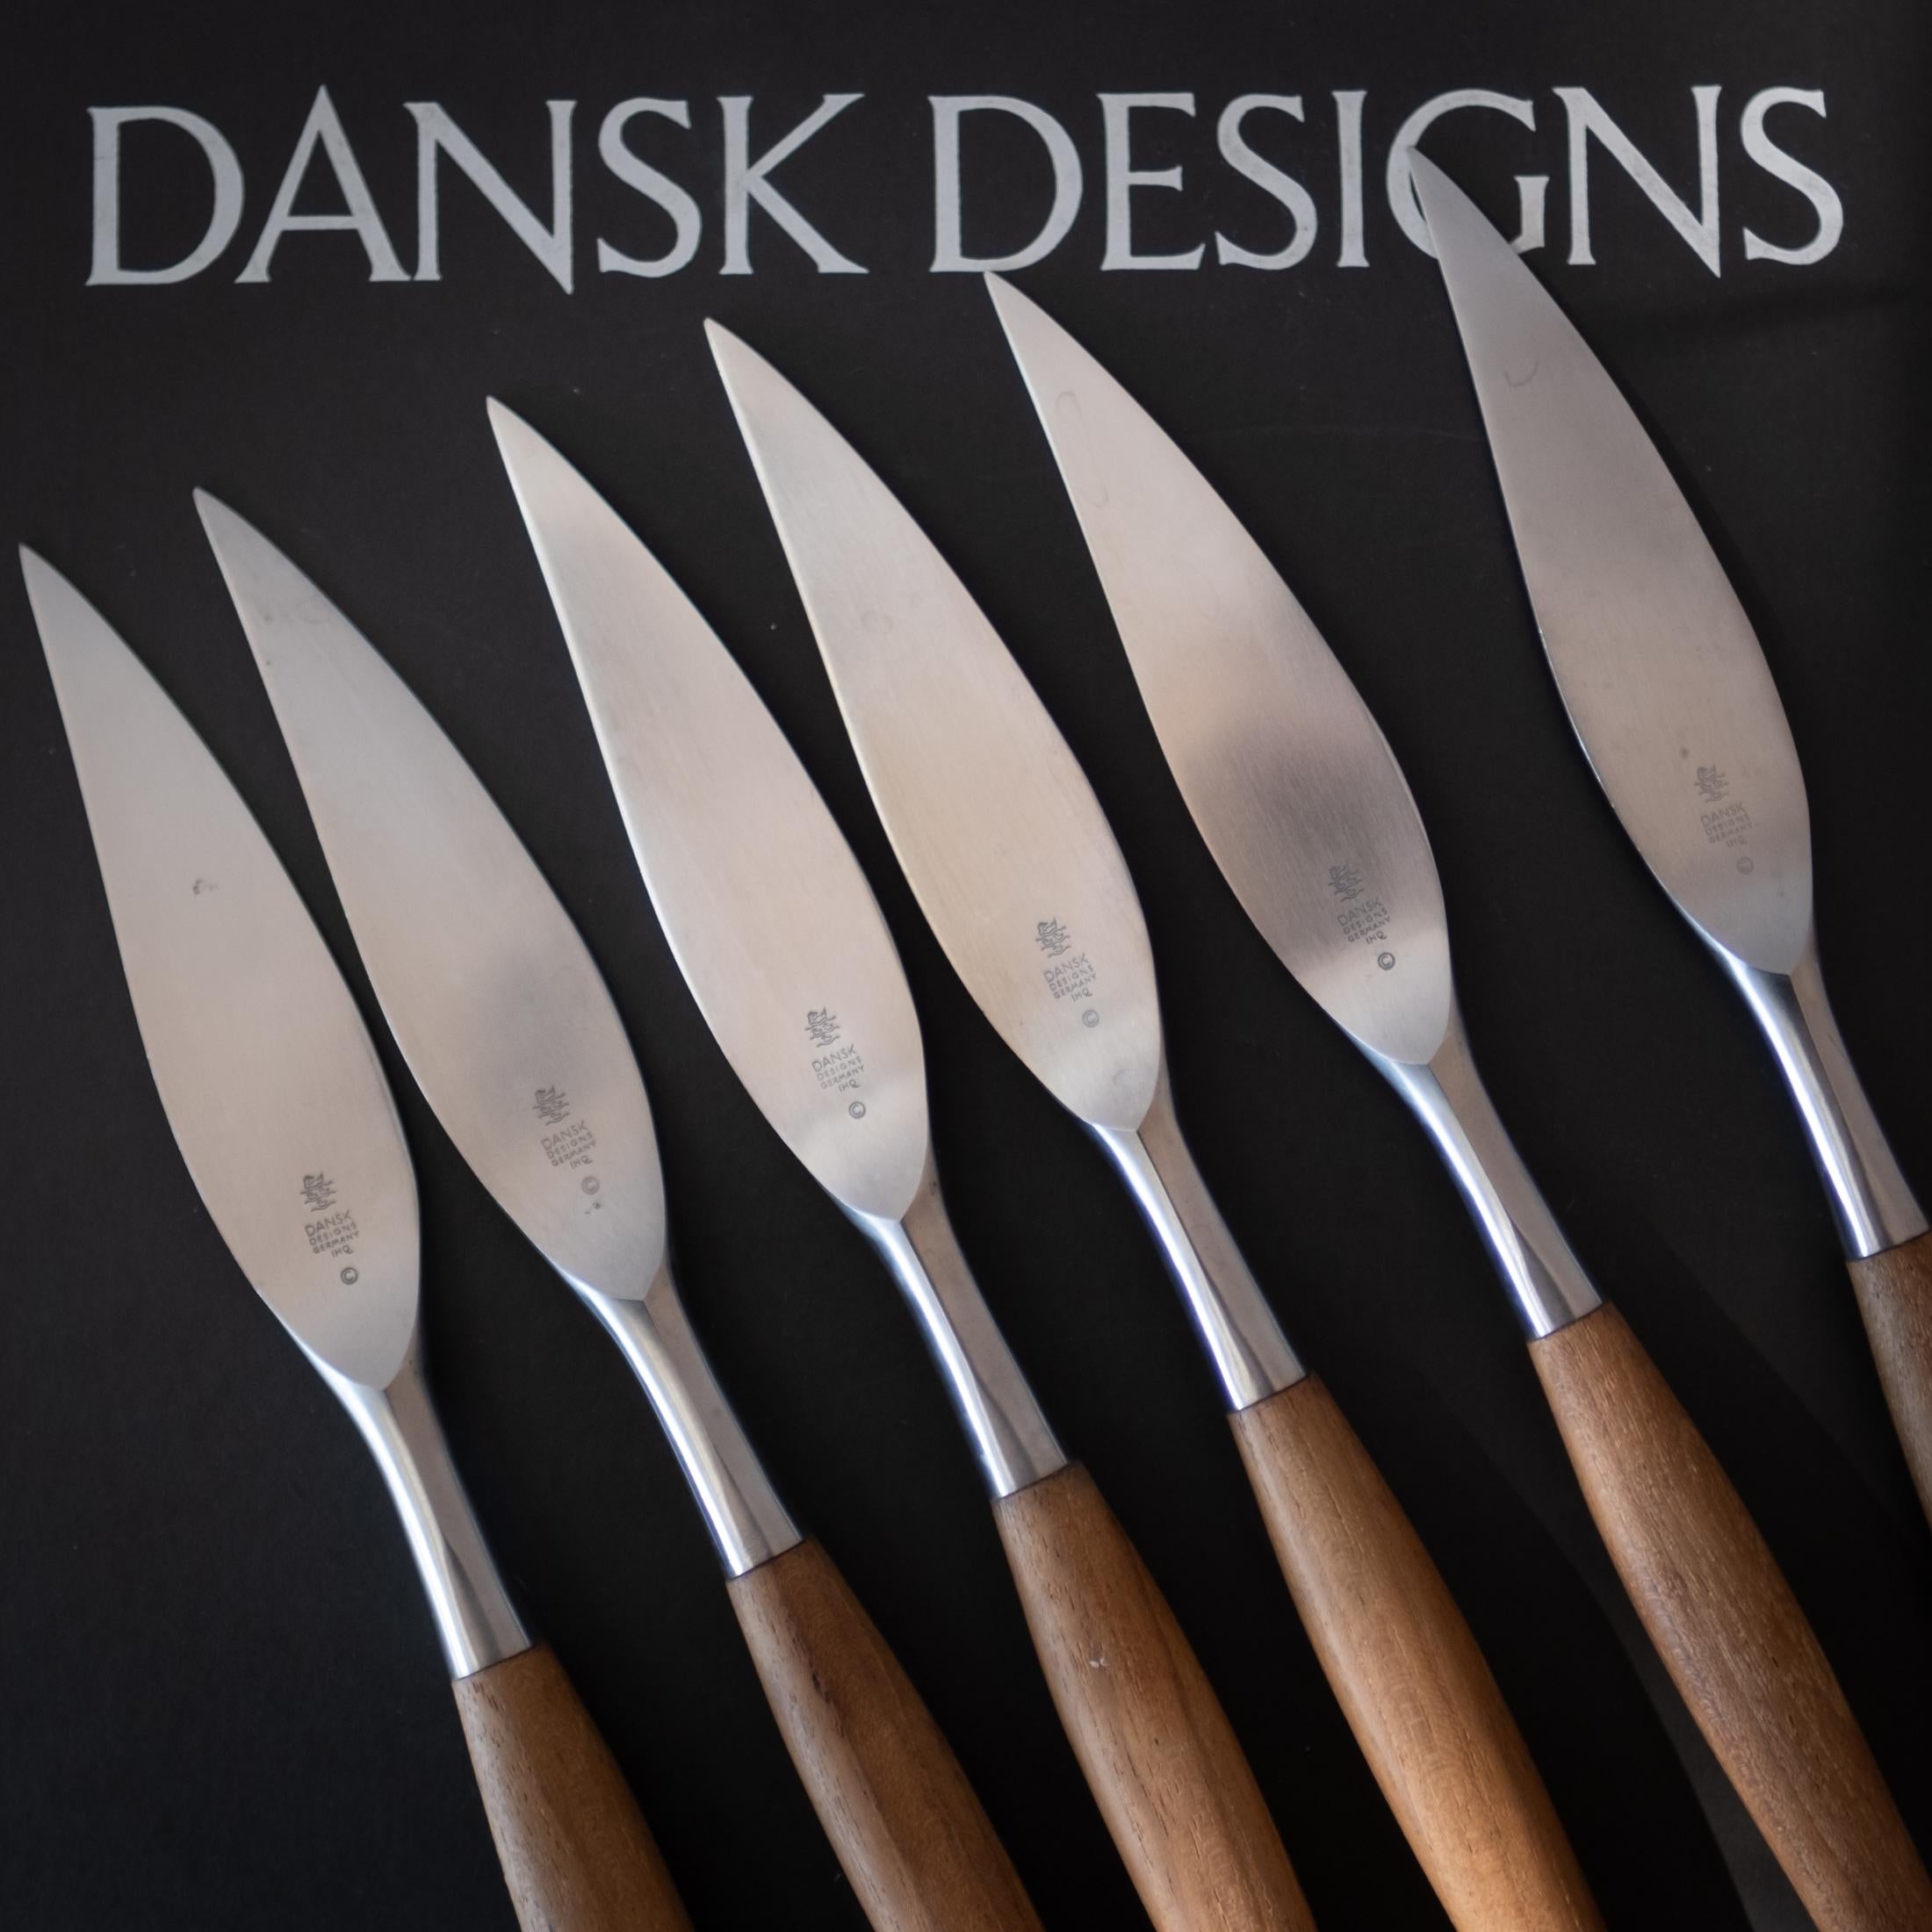 Un set di 6 coltelli da bistecca Fjord in teak e acciaio inossidabile, disegnati negli anni '50 da Jens Quistgaard per Dansk. Sembrano appena utilizzati. Viene fornito con la scatola e le custodie di plastica originali. Questo disegno fa parte della